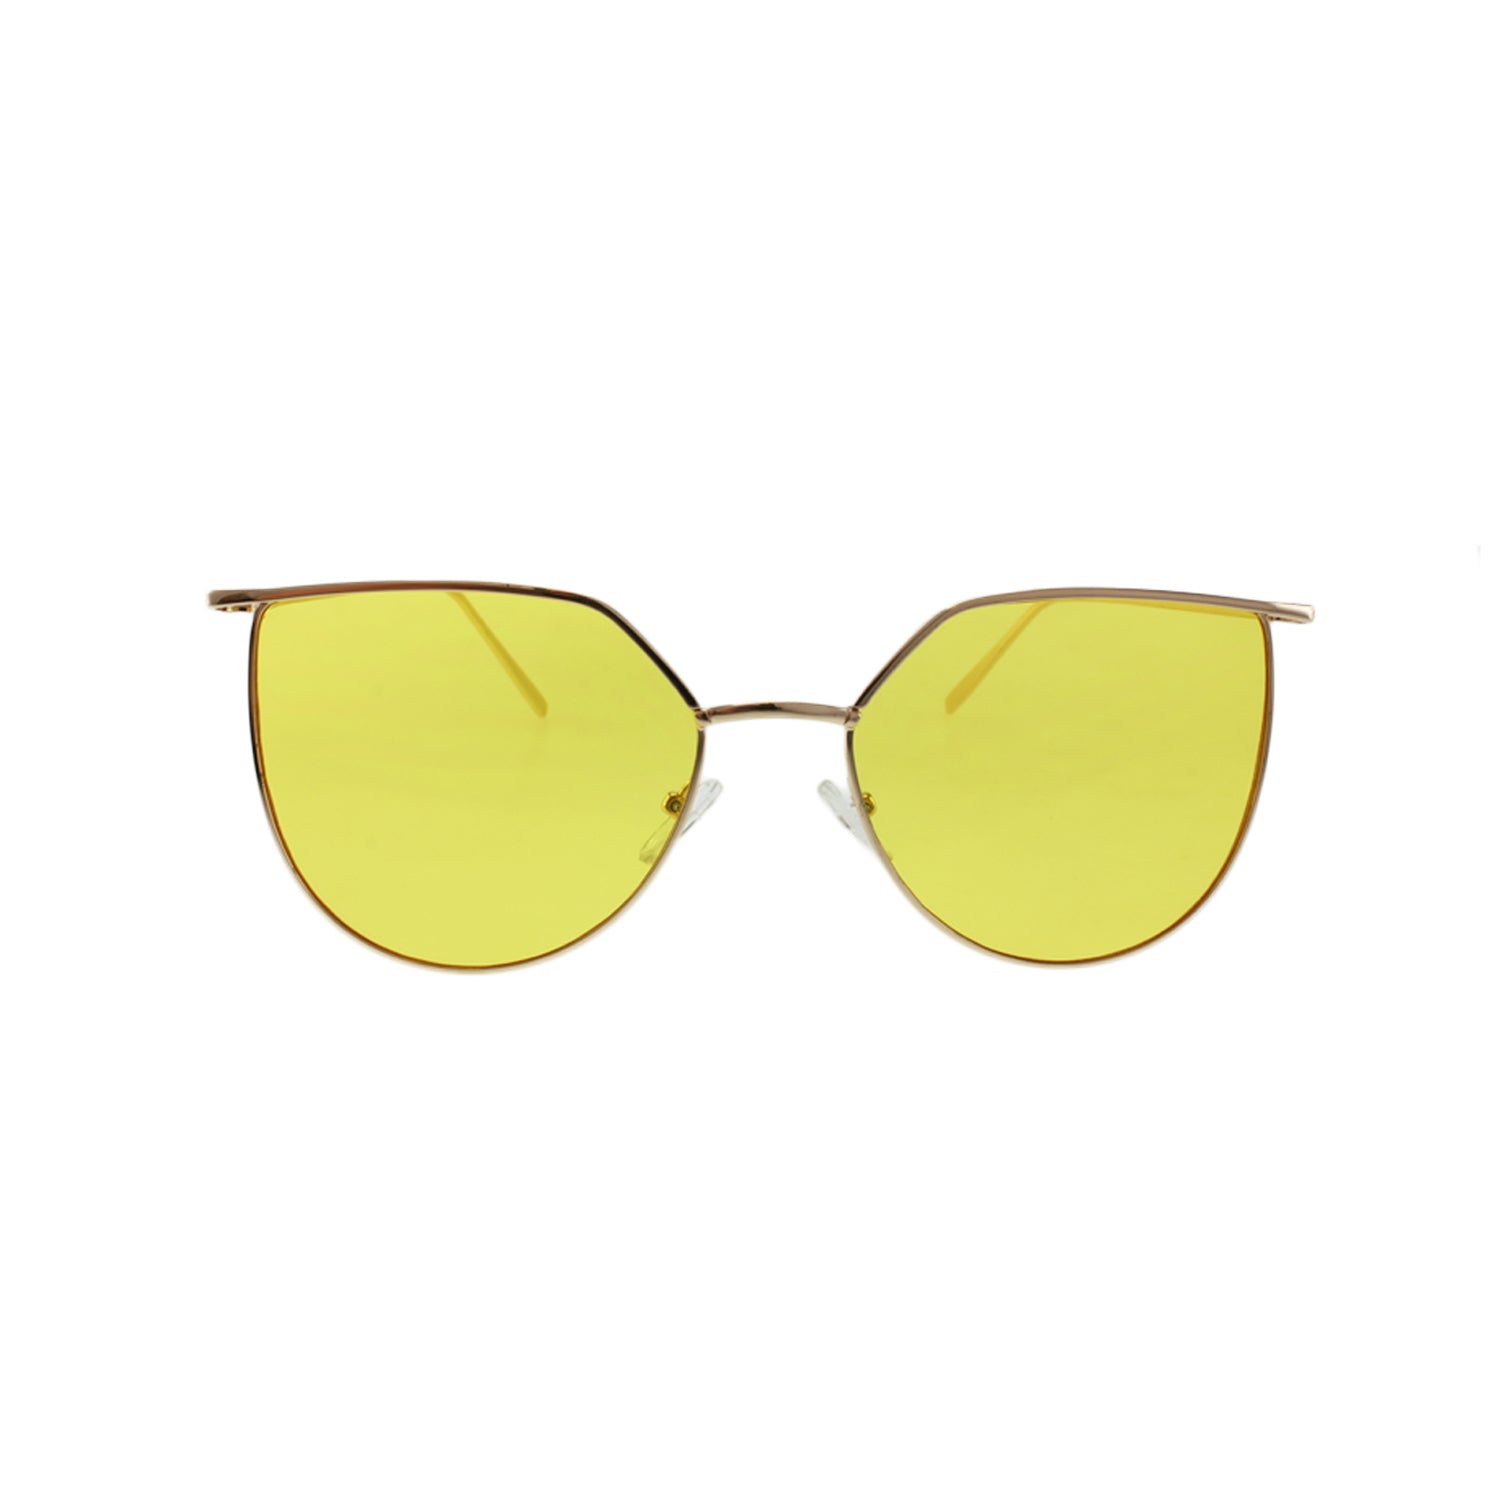 نظارات Jase New York Alton الشمسية باللون الأصفر